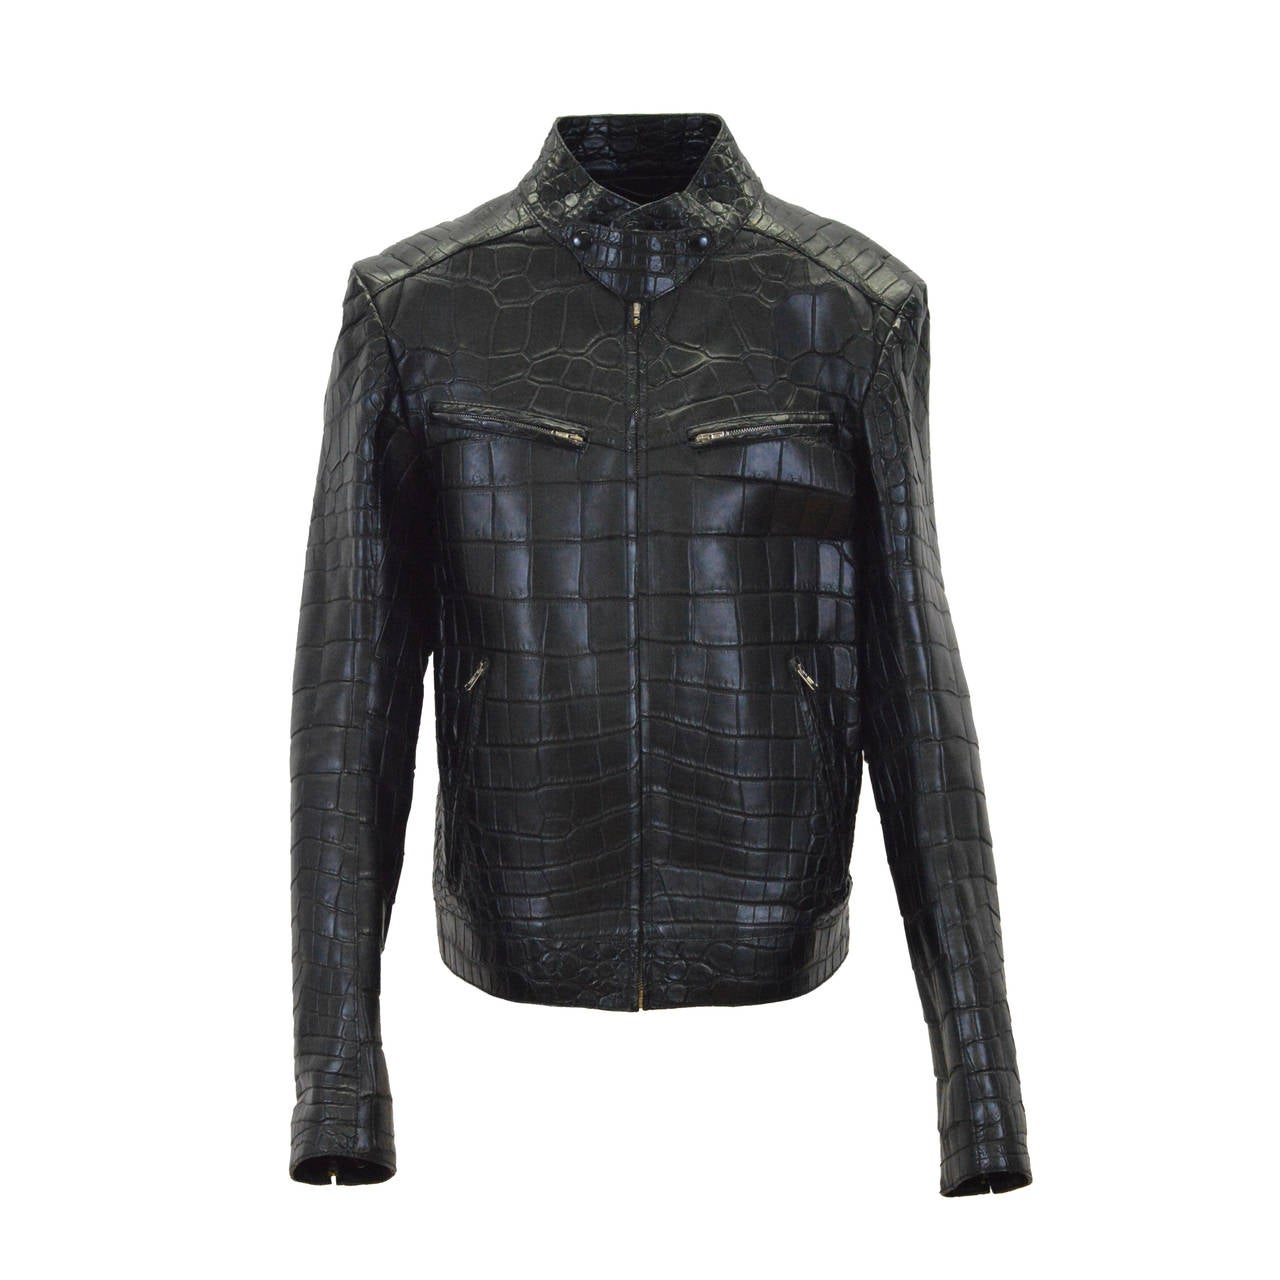 Yves Saint Laurent (YSL) Crocodile jacket Black 2013.